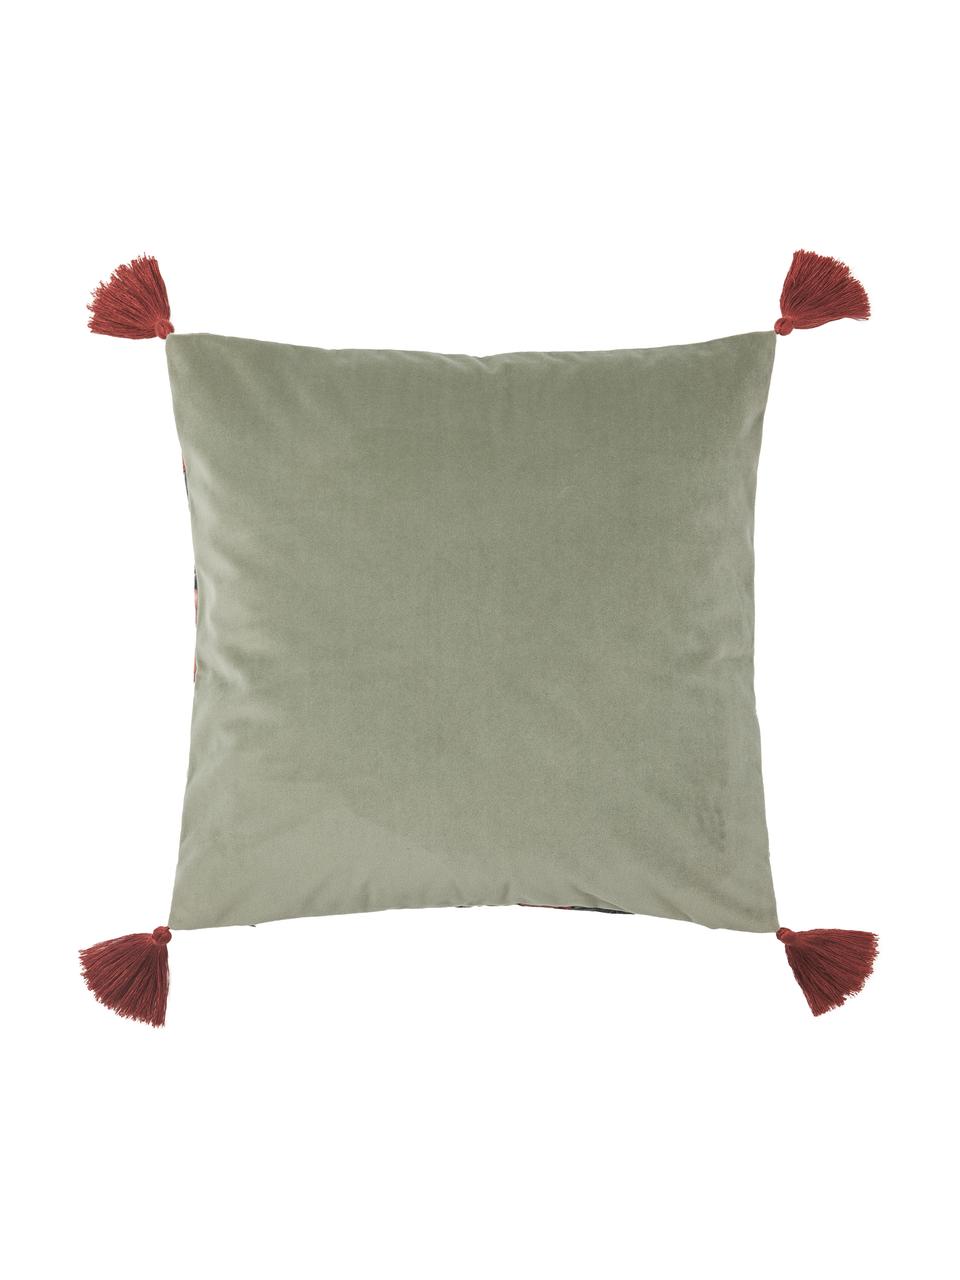 Poszewka na poduszkę z aksamitu z chwostami Pari, Szałwiowy zielony, czerwony, żółty, S 45 x D 45 cm